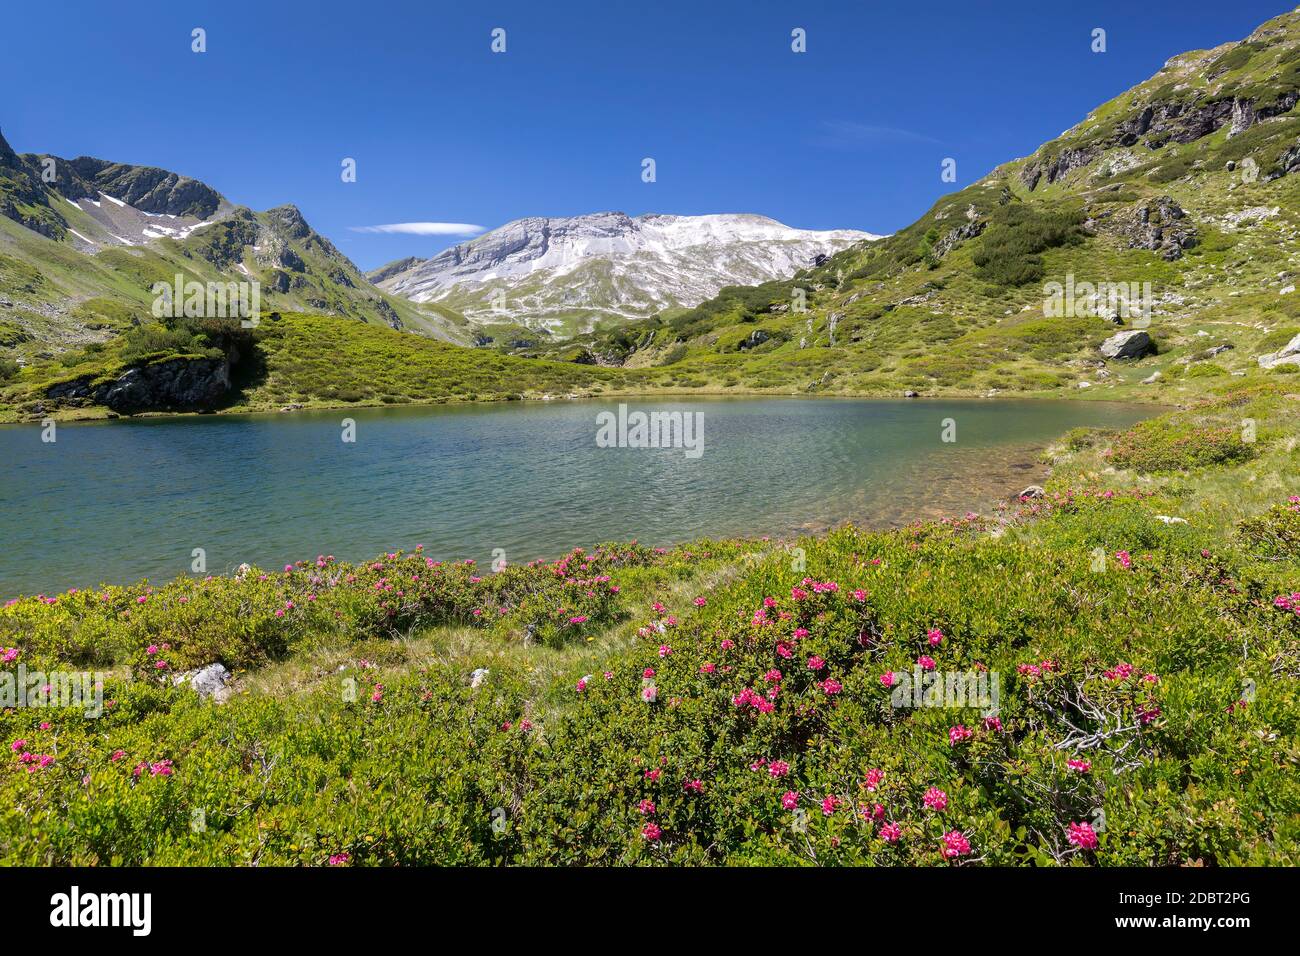 Un des lacs de Giglachsee en Styrie, Autriche, Europe, im été Banque D'Images